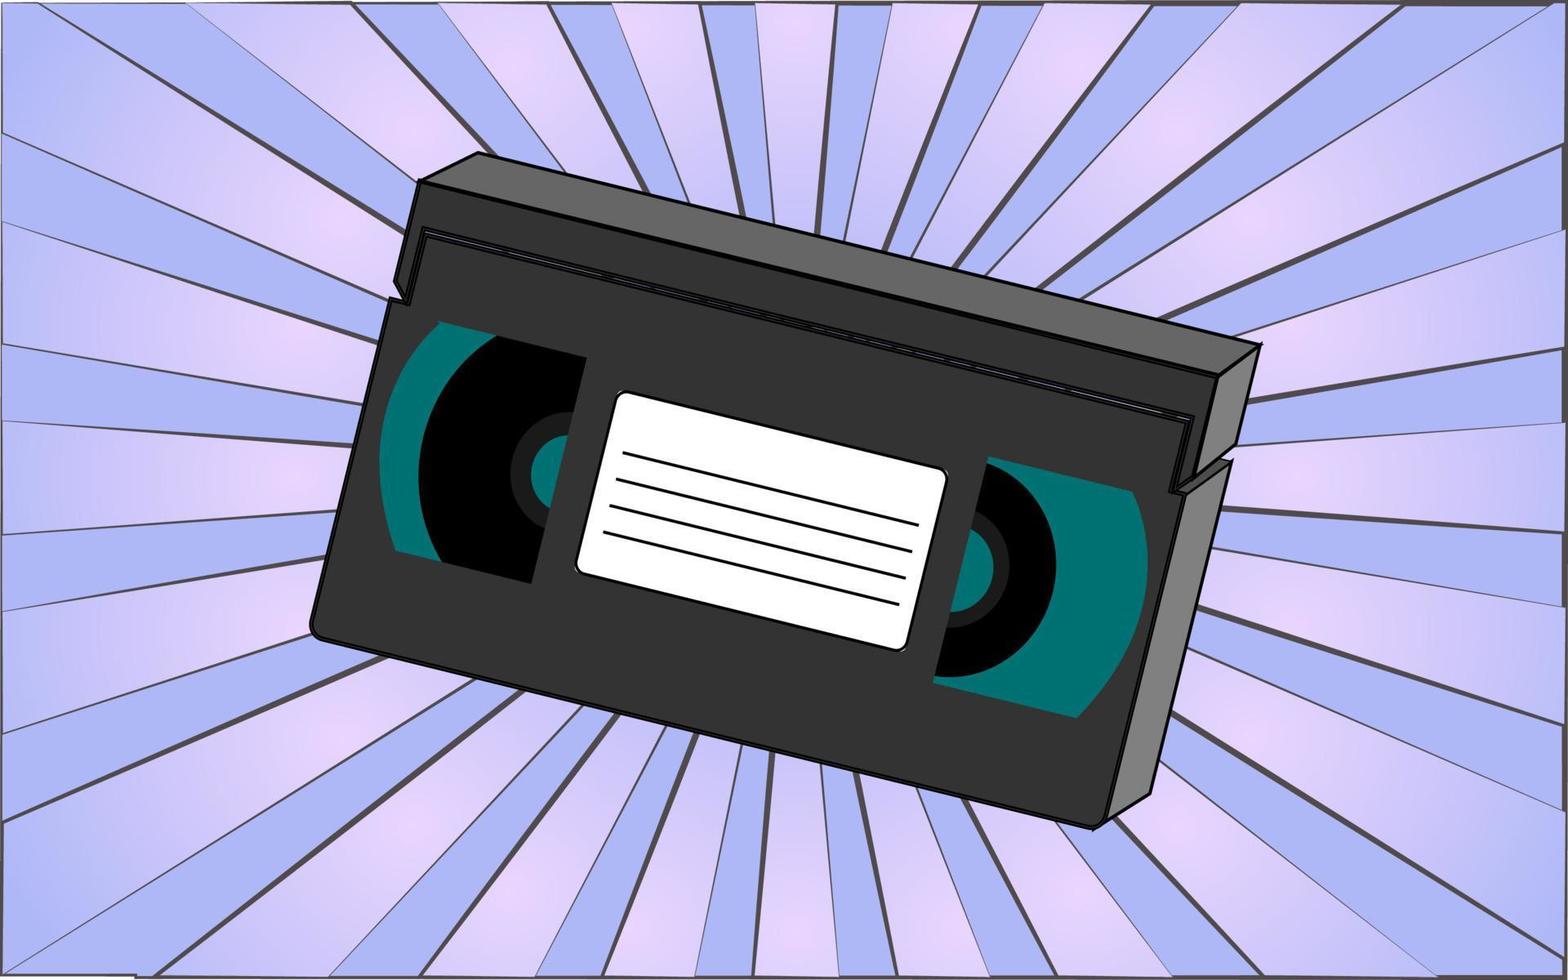 retro gammal antik hipster video kassett från de 70-talet, 80-tal, 90-talet, 2000-talet mot en bakgrund av abstrakt blå strålar. vektor illustration